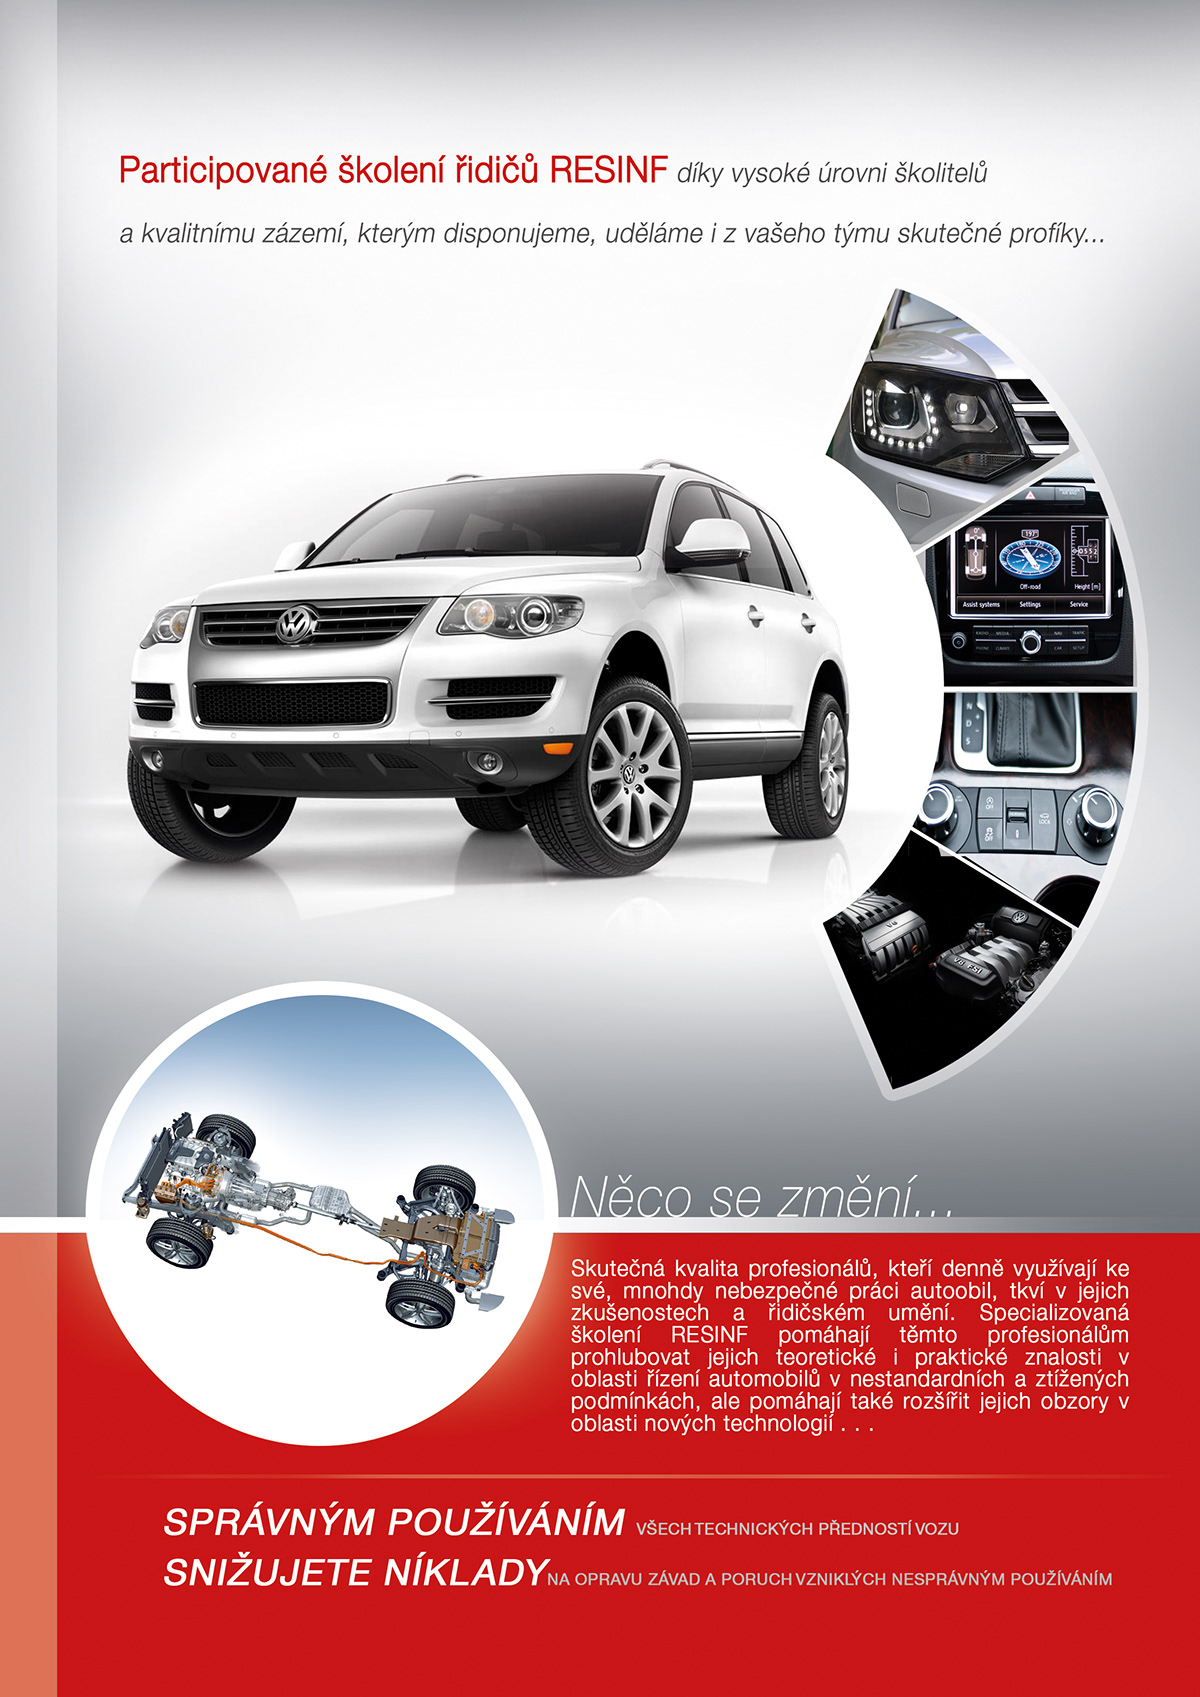 graphic pdf presentation Cars auto-moto design